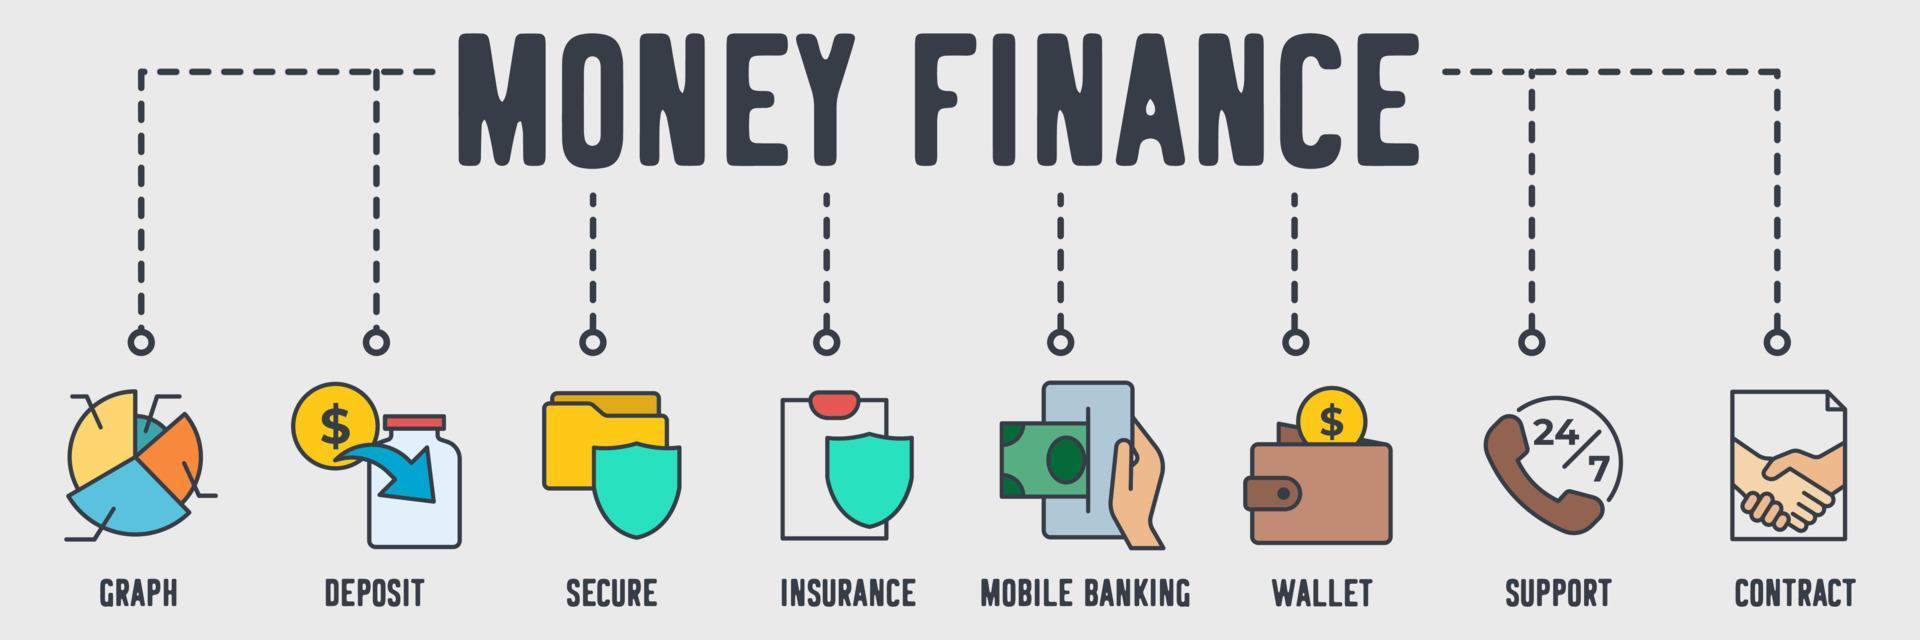 icono de web de banner de finanzas de negocios de dinero. gráfico, depósito, seguro, seguro, banca móvil, billetera, soporte, concepto de ilustración de vector de contrato.